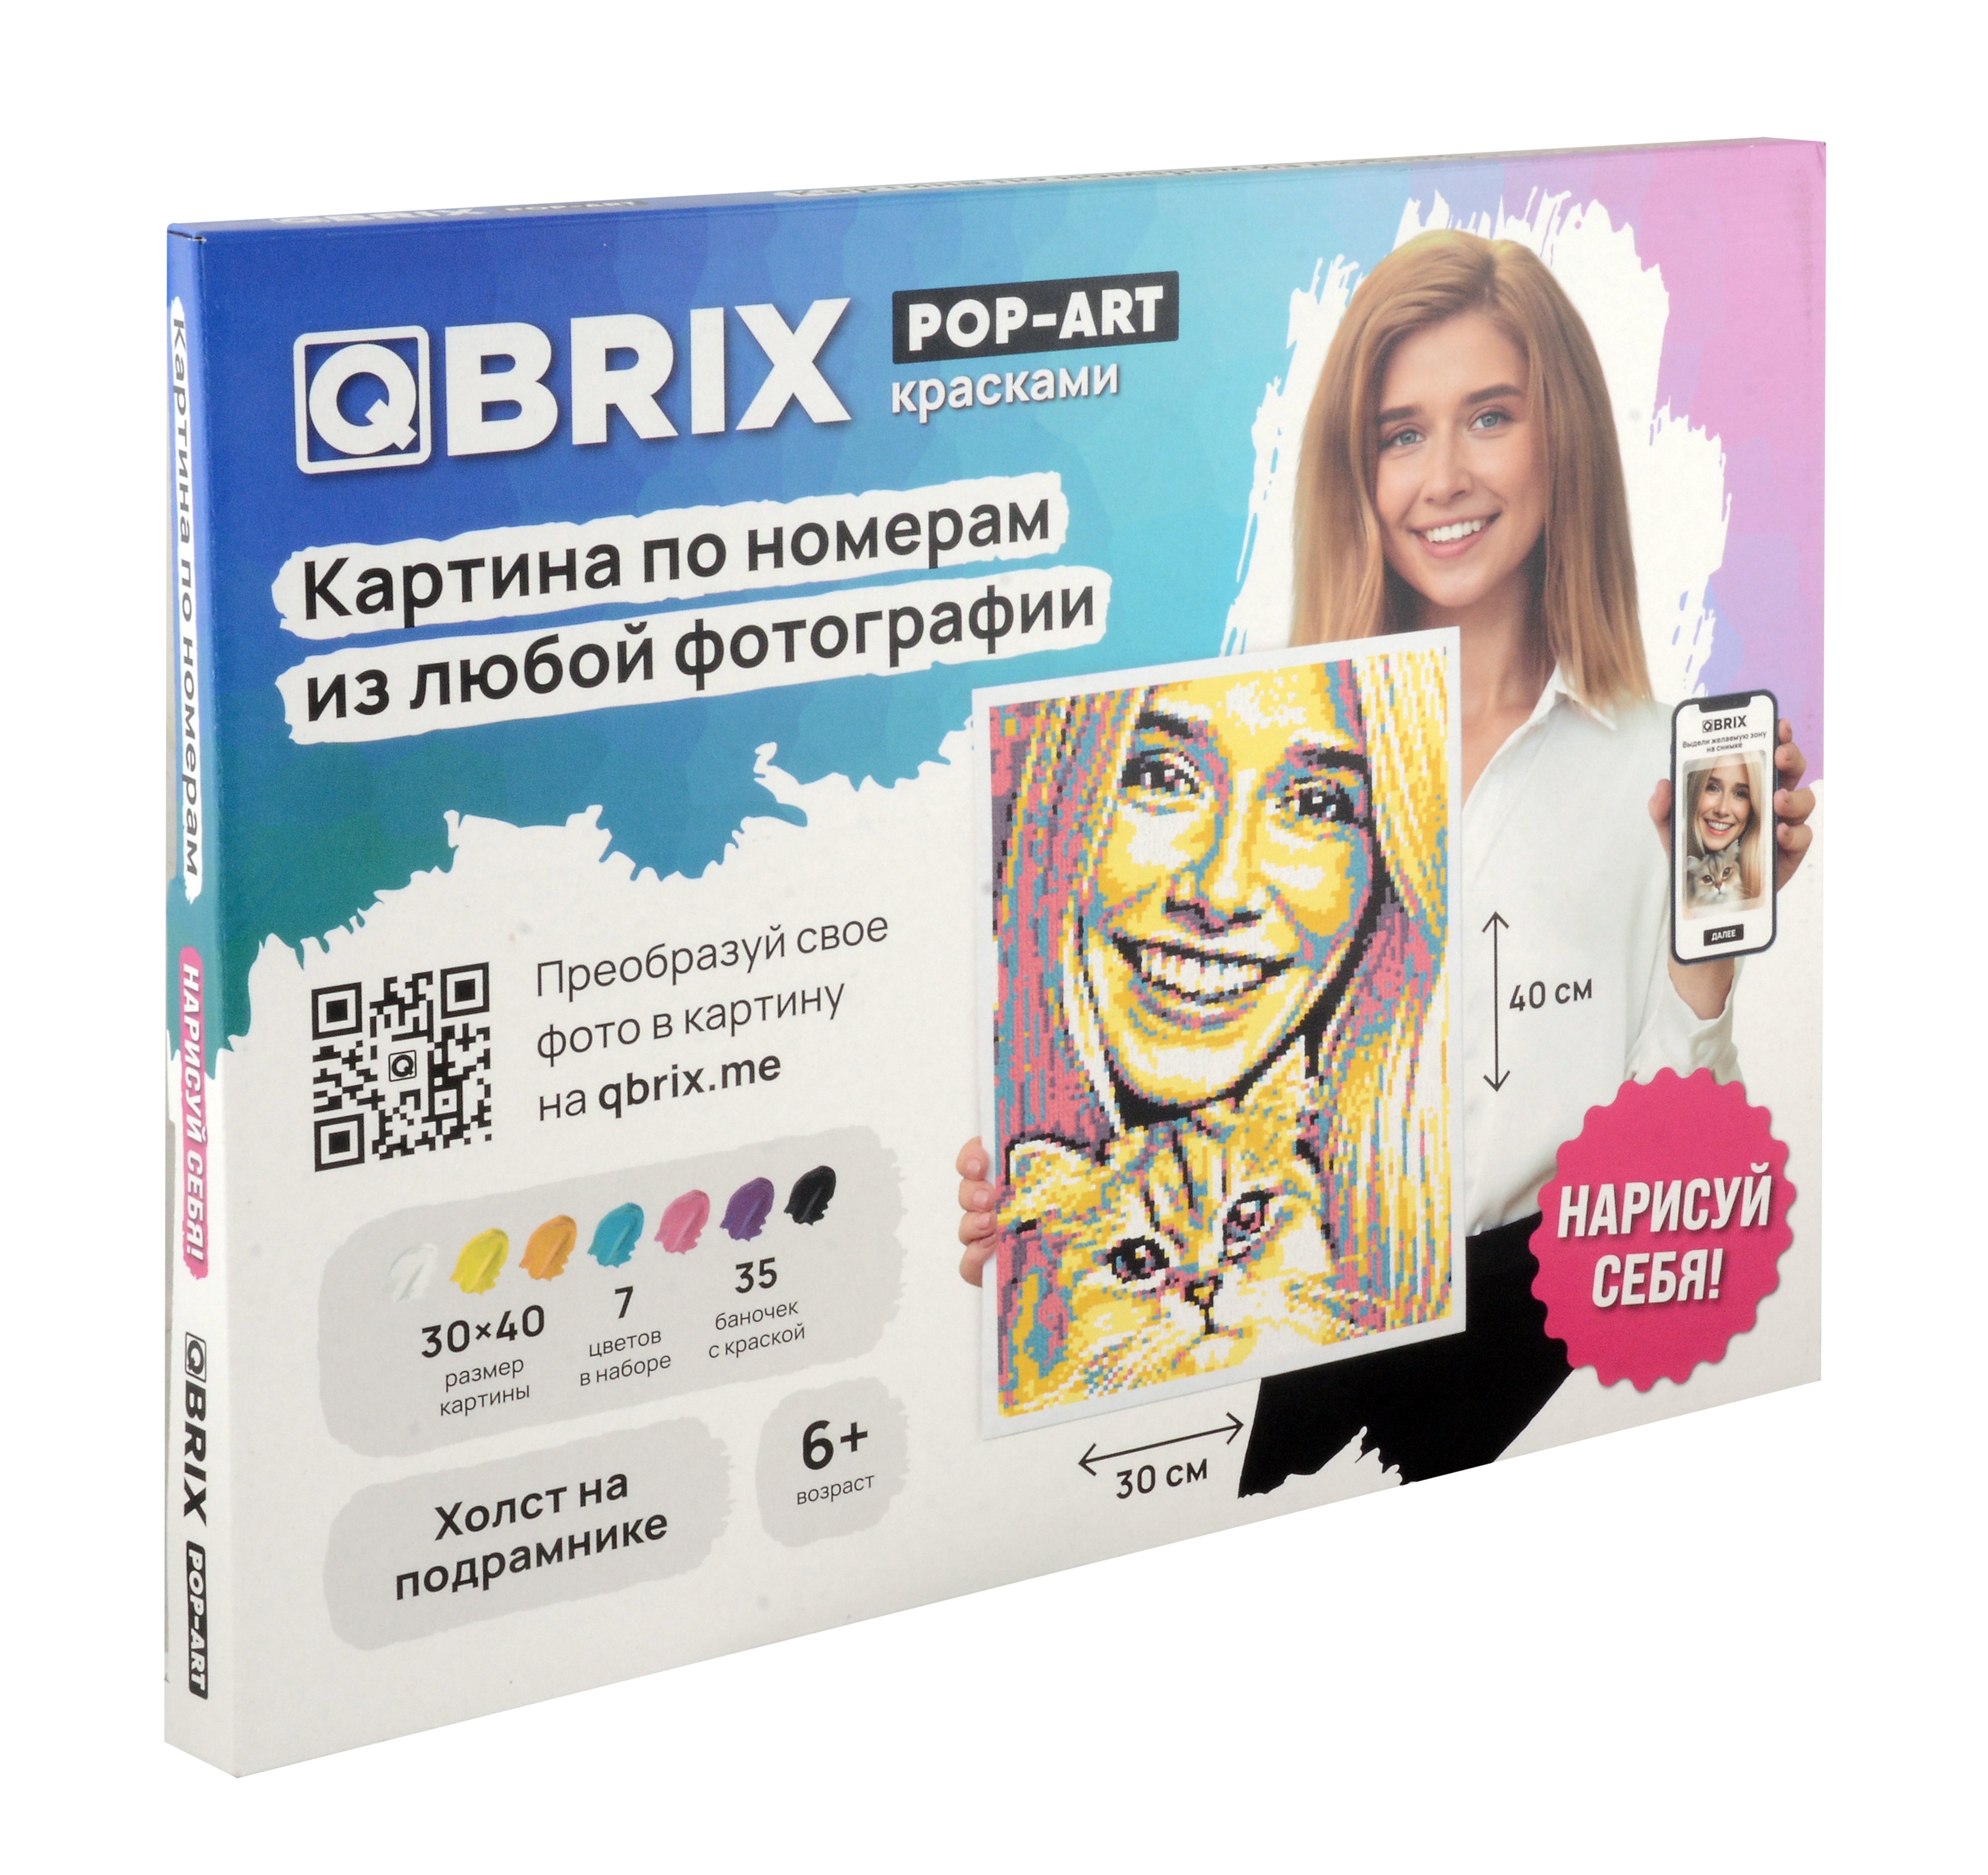       QBRIX POP-ART 3040